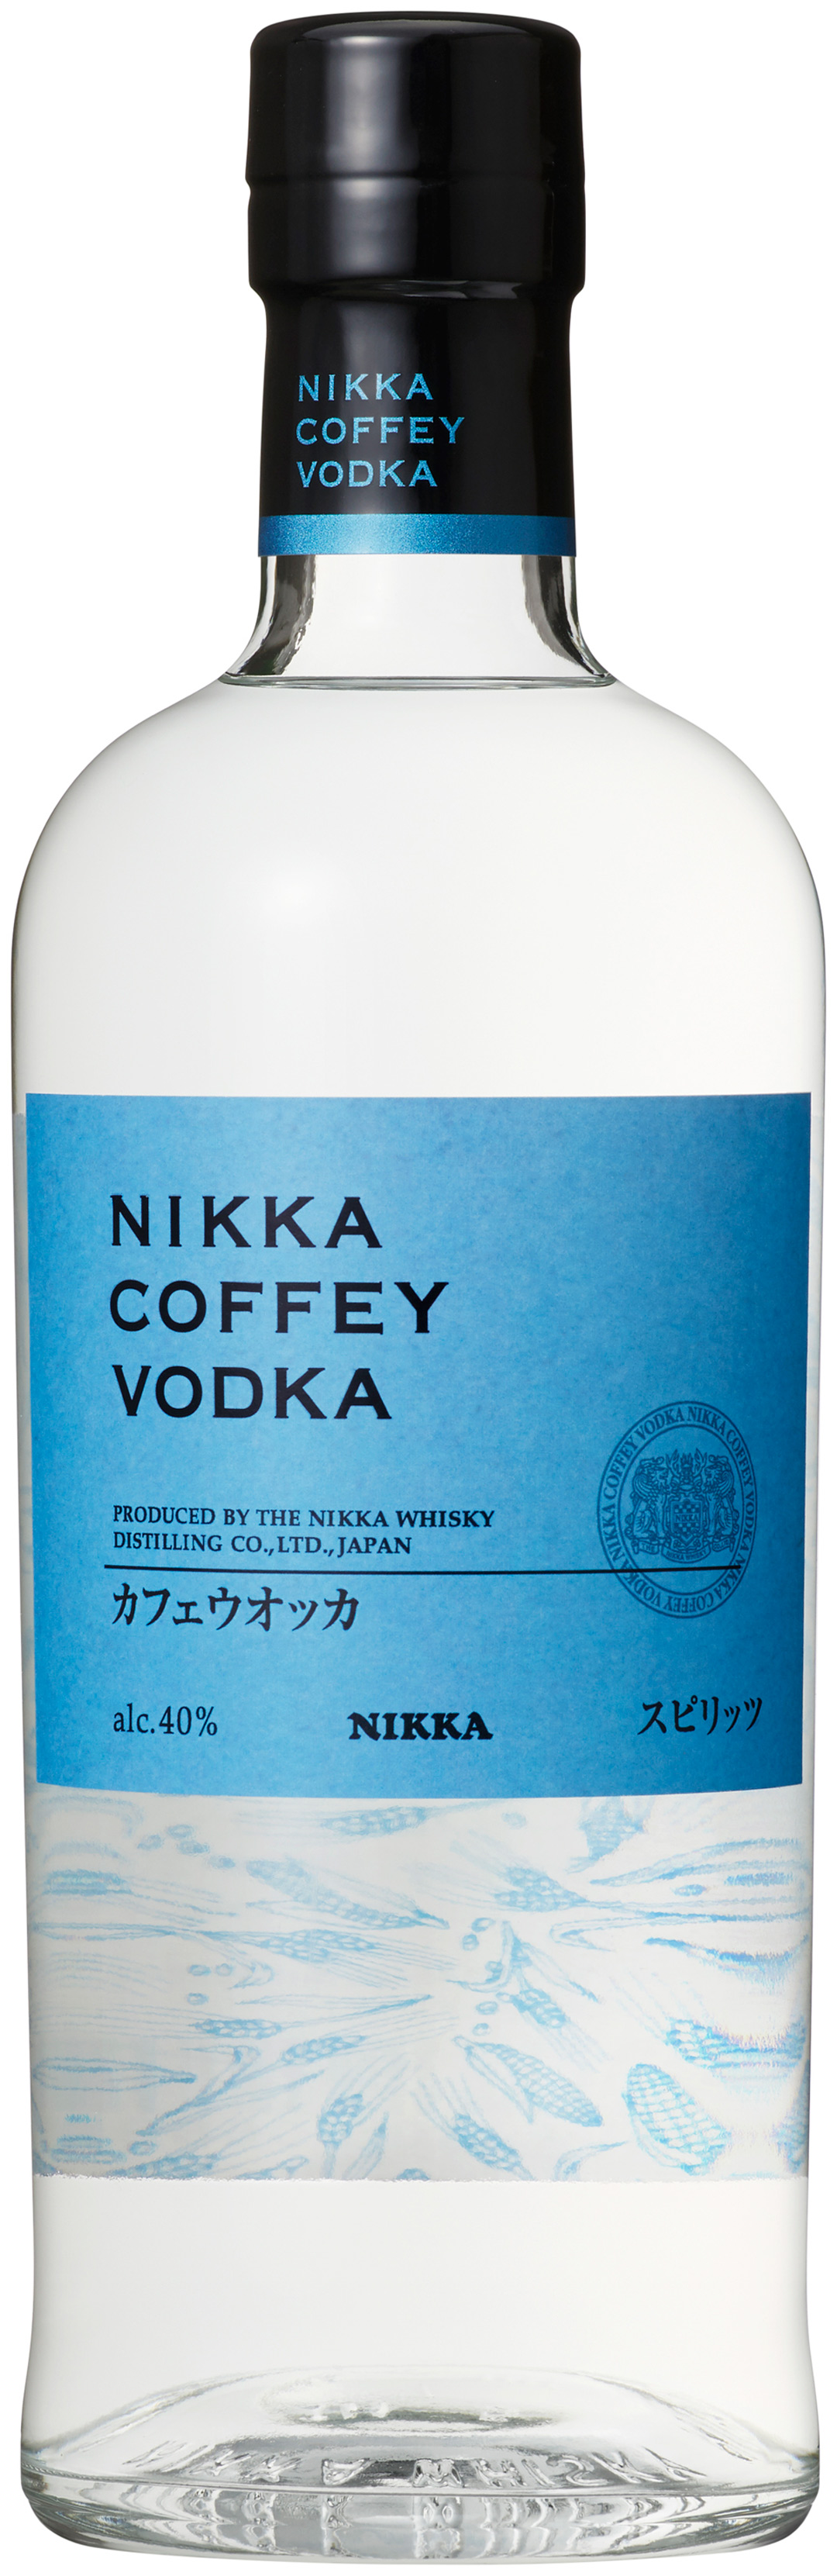 Vodka nikka coffey 40  Vodka